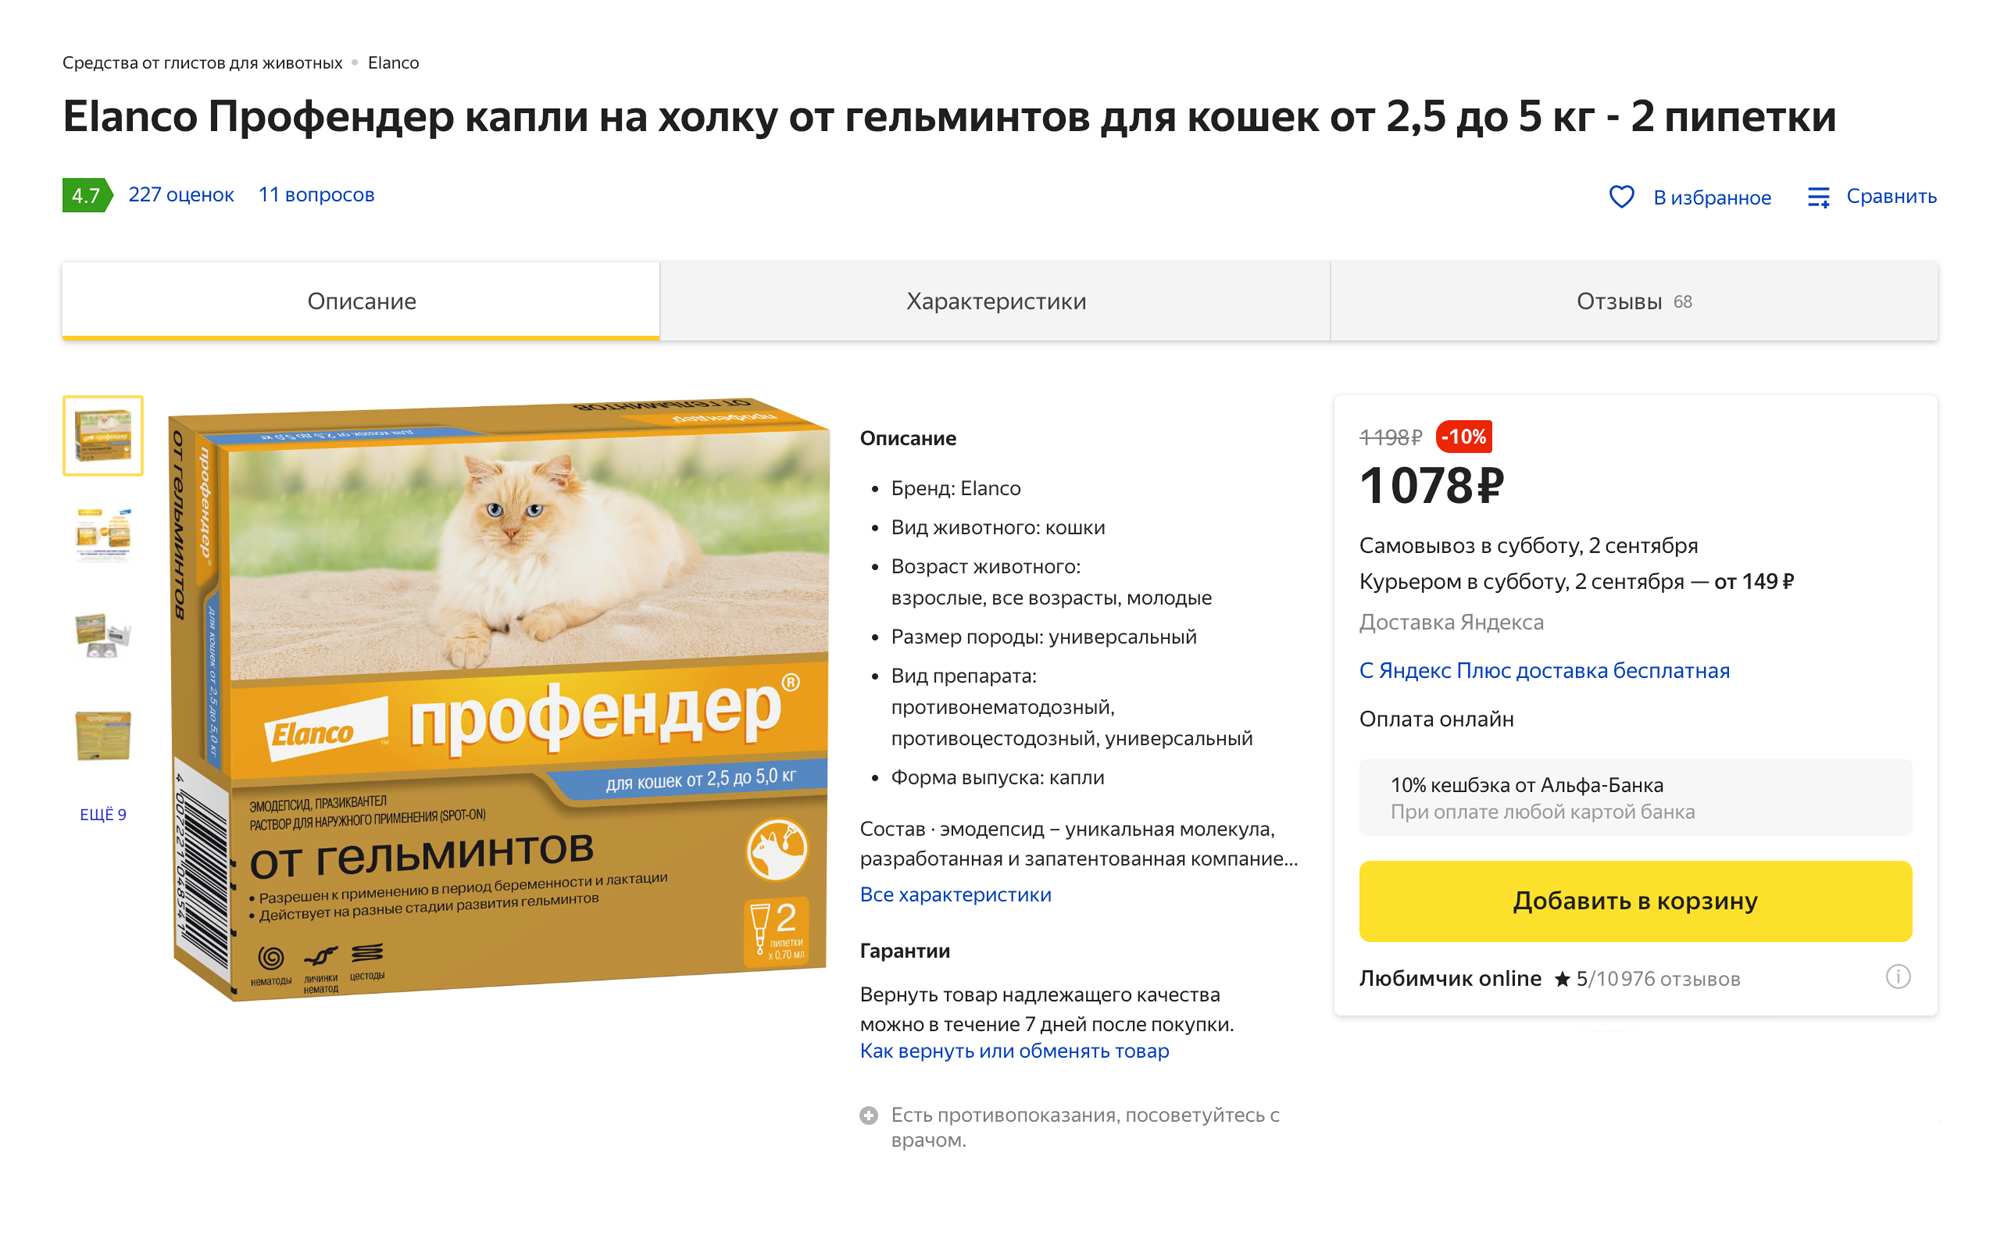 За 10⁠—⁠14 дней до прививки нужно дать кошке препараты от глистов. Например, «Профендер» — его очень просто наносить: надо просто накапать капли из пипетки на холку кошке. Упаковка стоит около 1000 ₽, в ней две пипетки, то есть хватит на два раза. Источник: «Яндекс-маркет»